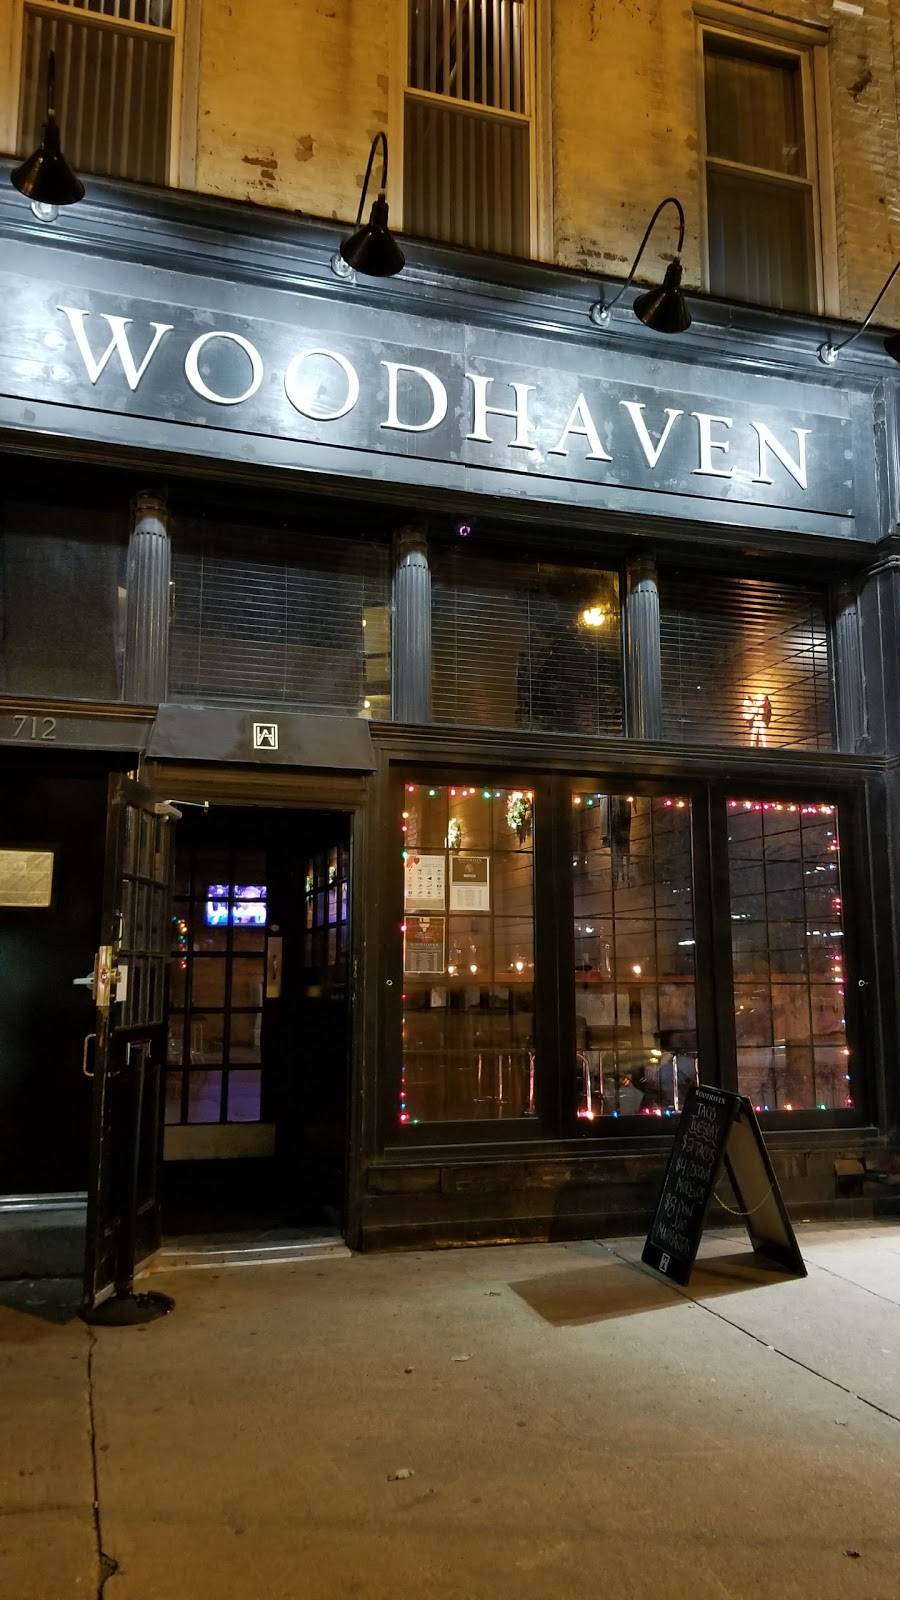 Woodhaven Bar & Kitchen | restaurant | 712 N Clark St, Chicago, IL 60654, USA | 3126249008 OR +1 312-624-9008